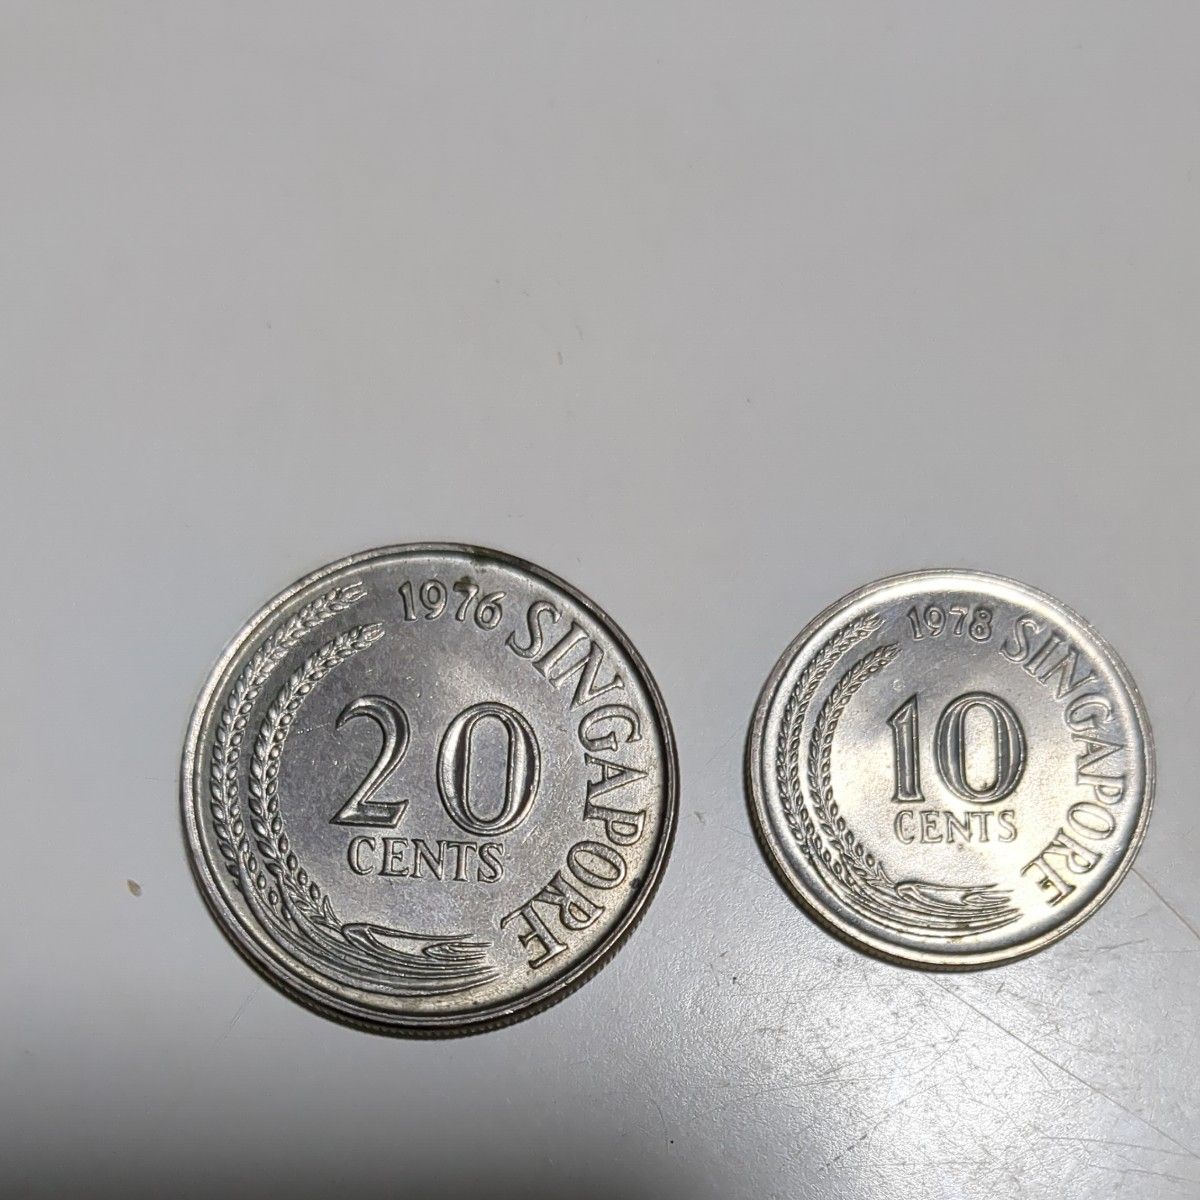 シンガポール 旧紙幣硬貨